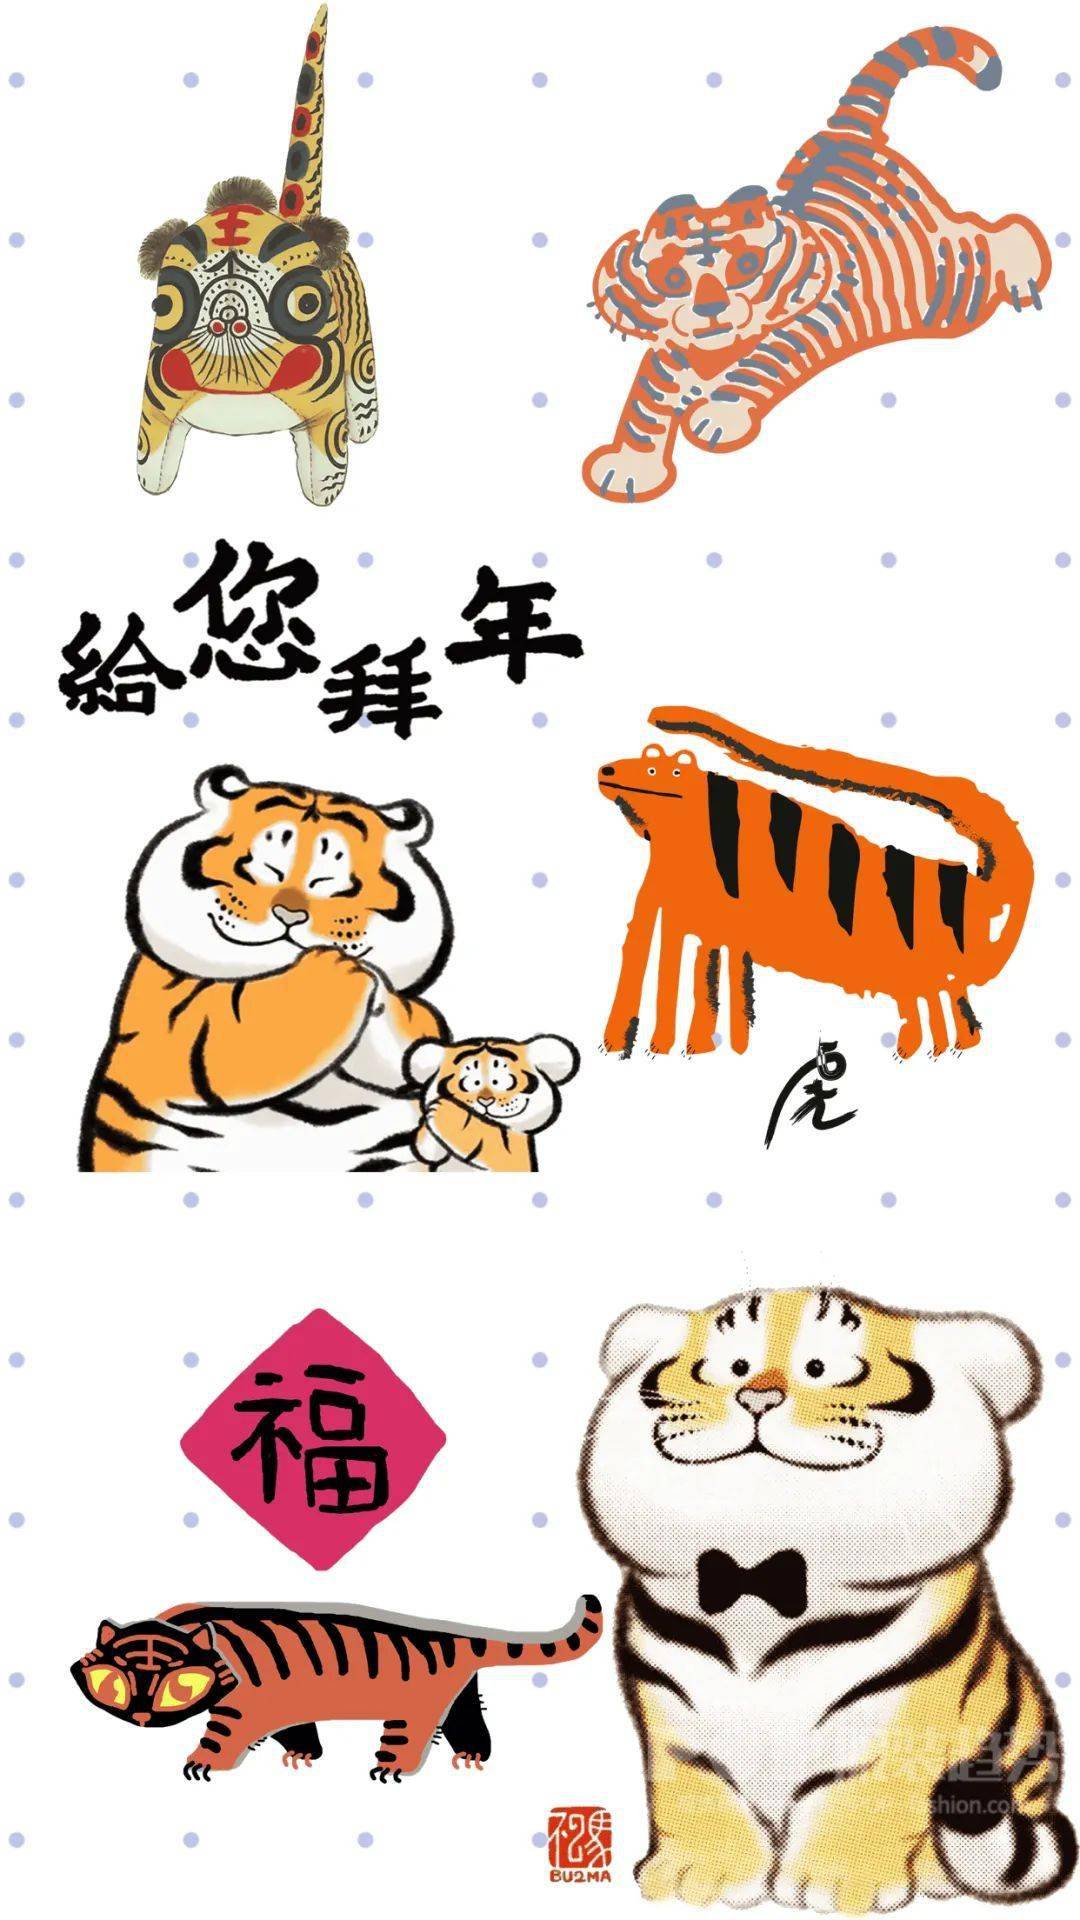 2022年将迎来中国农历虎年,在童装图案中有着重要地位的老虎元素图案